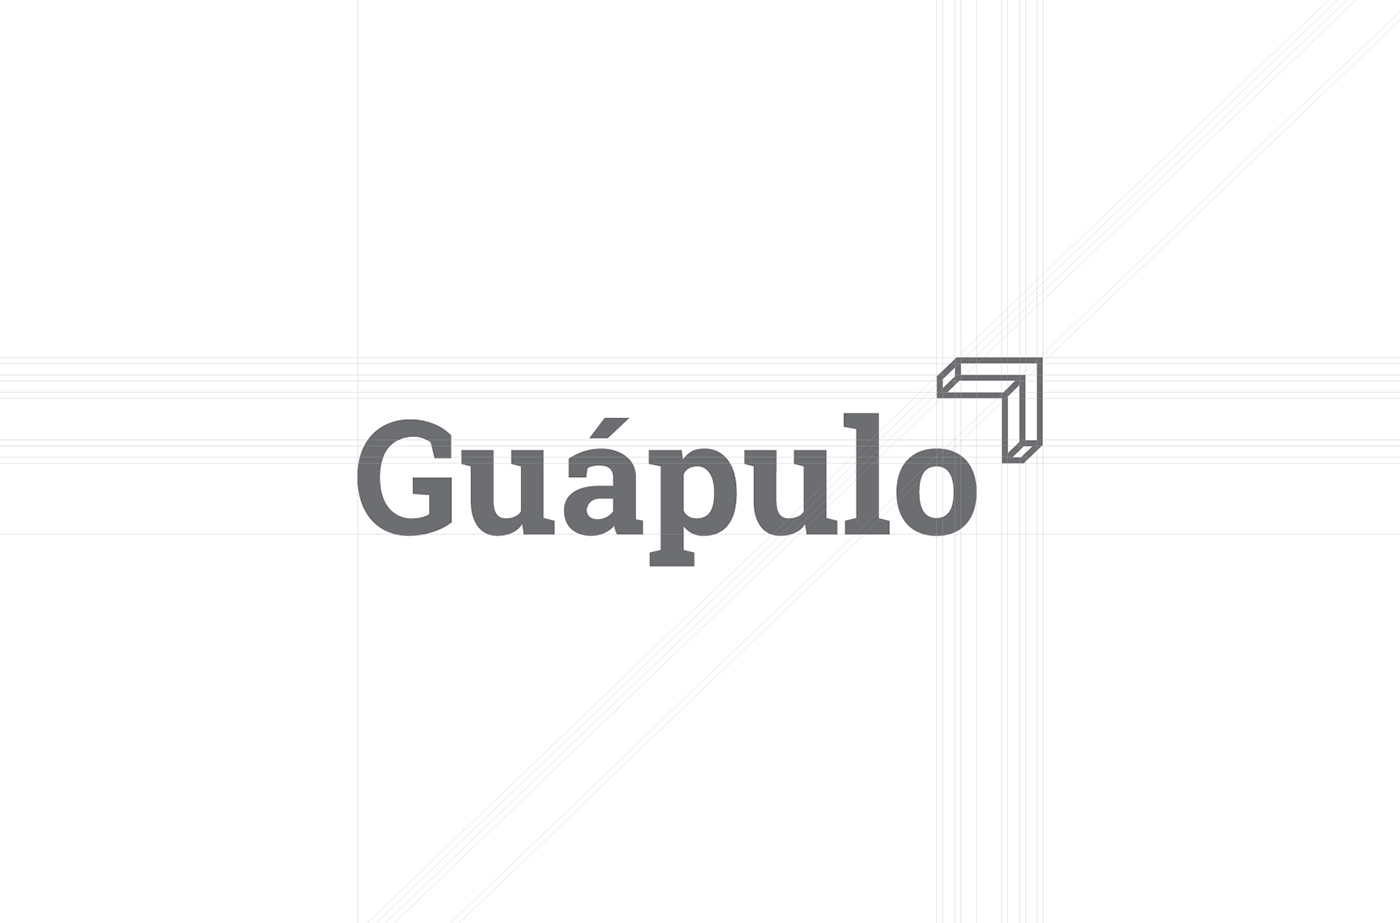 guapulo Ecuador exportacion importación comercio marca branding 